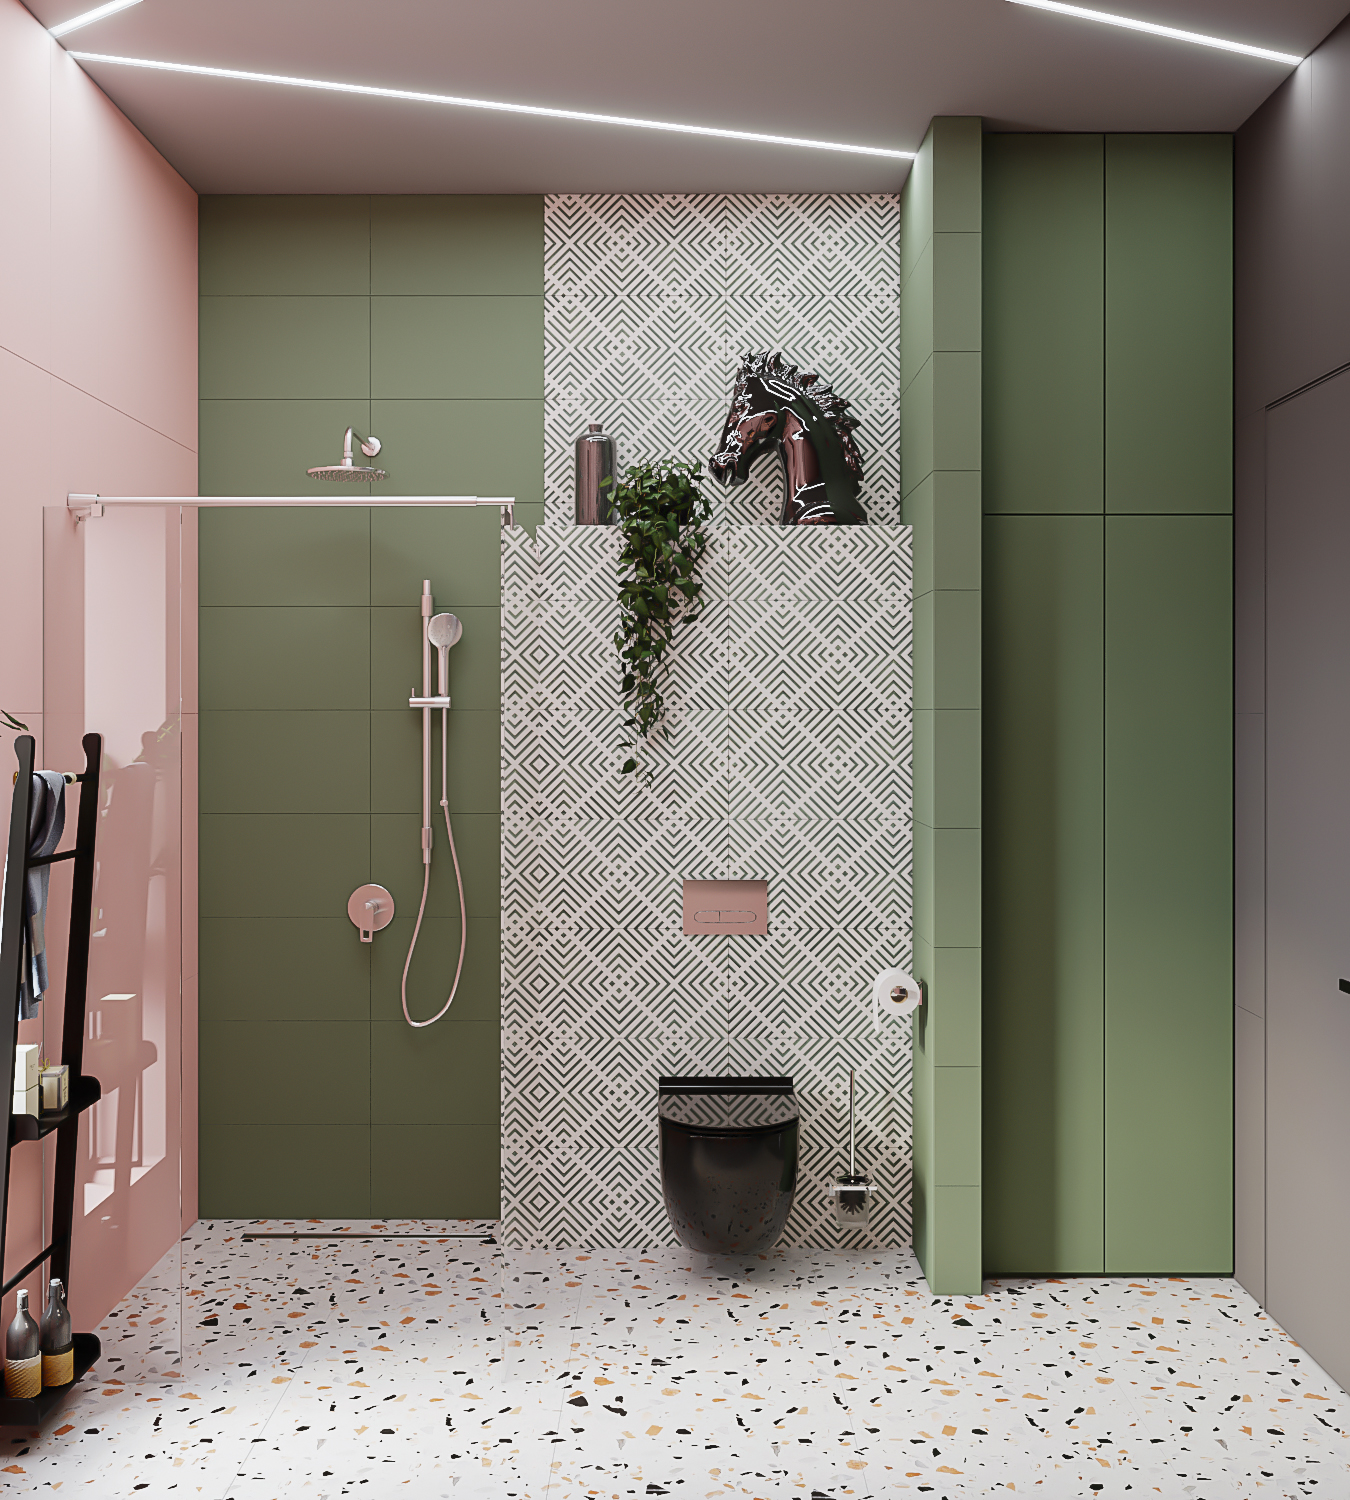 Visualização do banheiro em 3d max corona render imagem